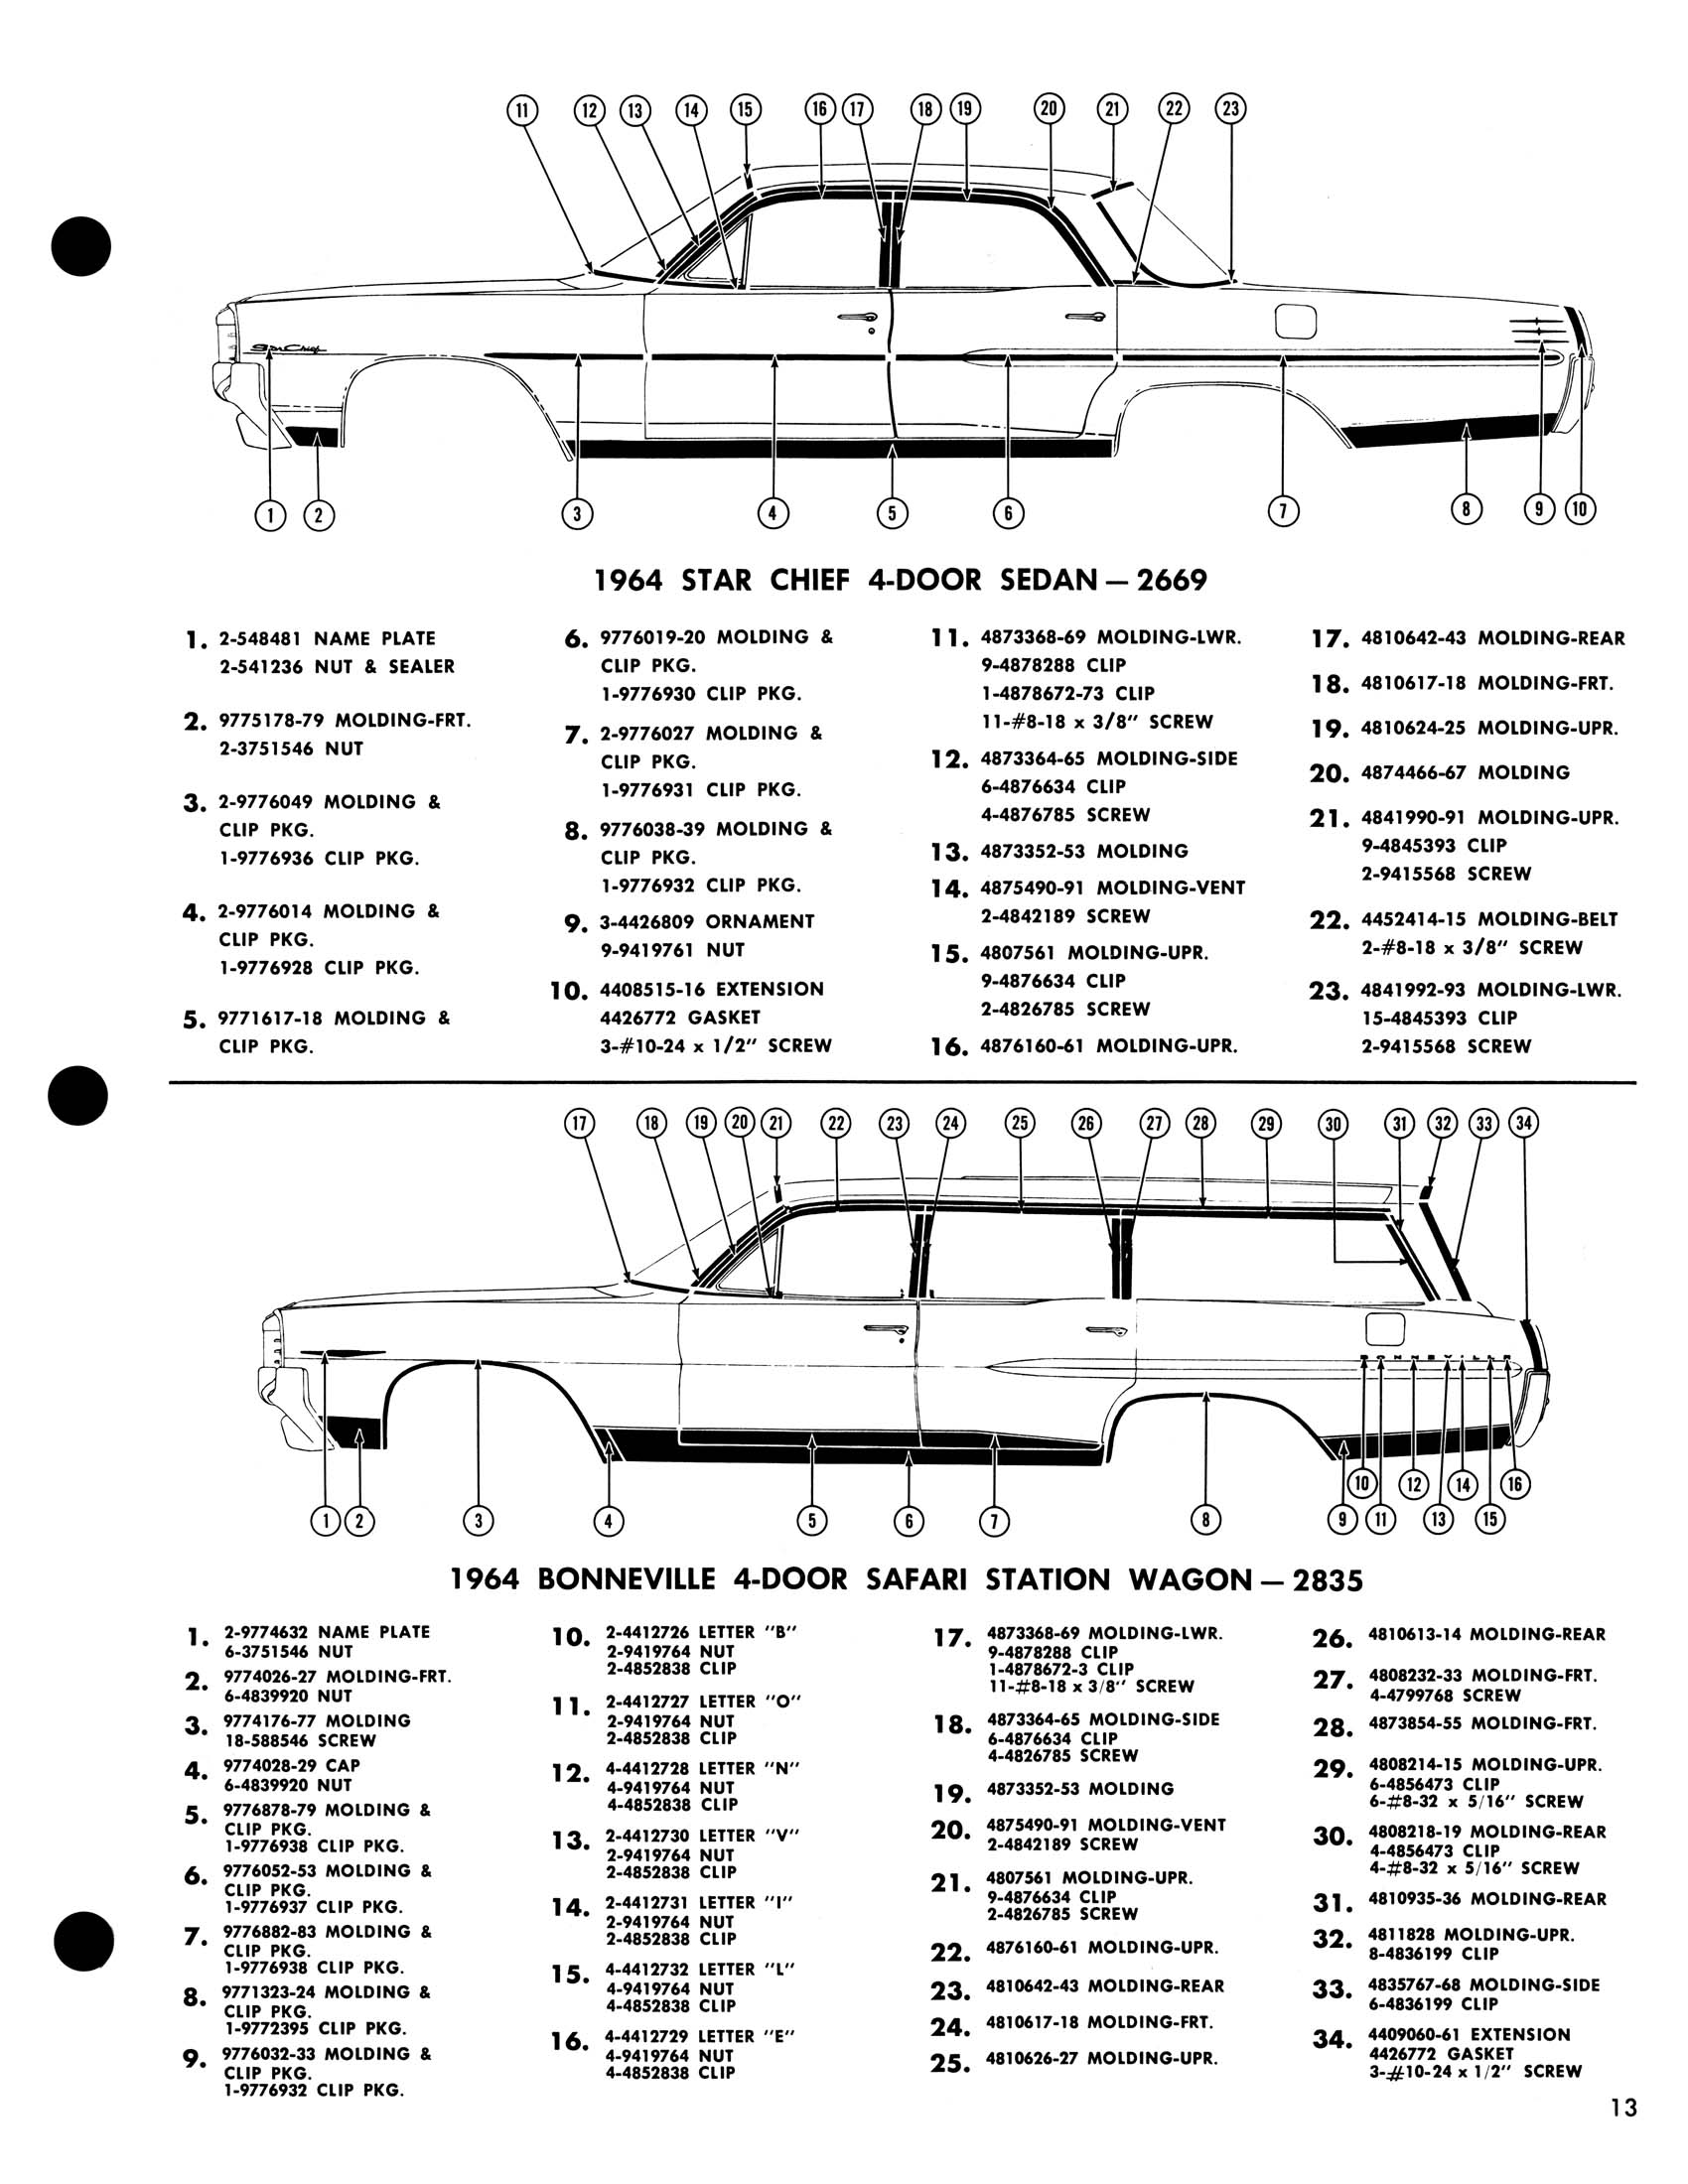 1964_Pontiac_Molding_and_Clip_Catalog-15